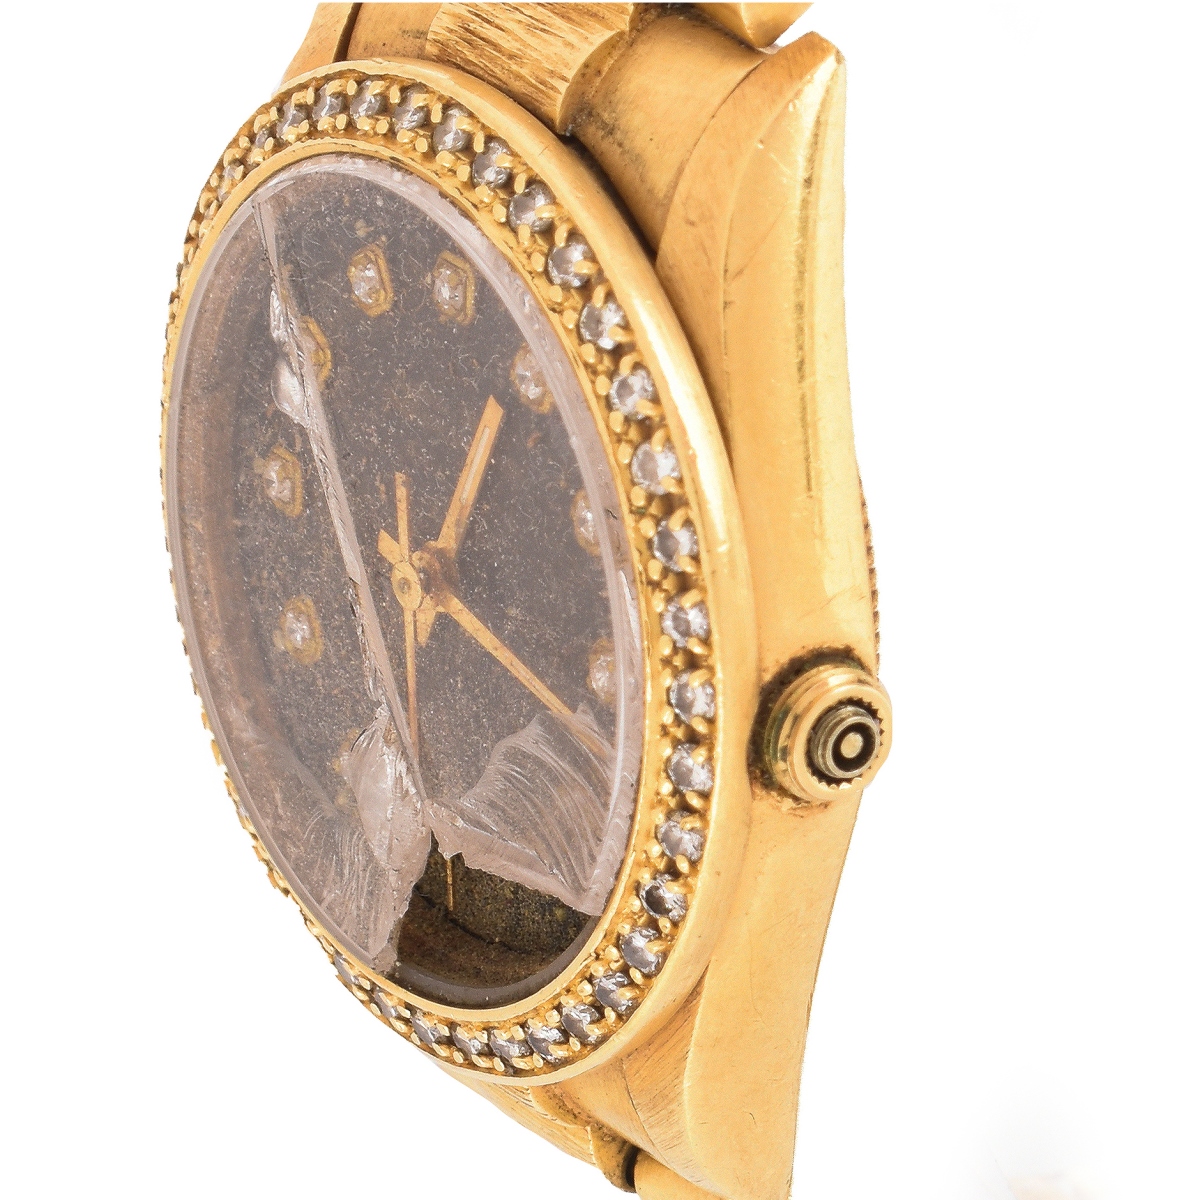 Lady's 18K & Diamond Rolex Watch